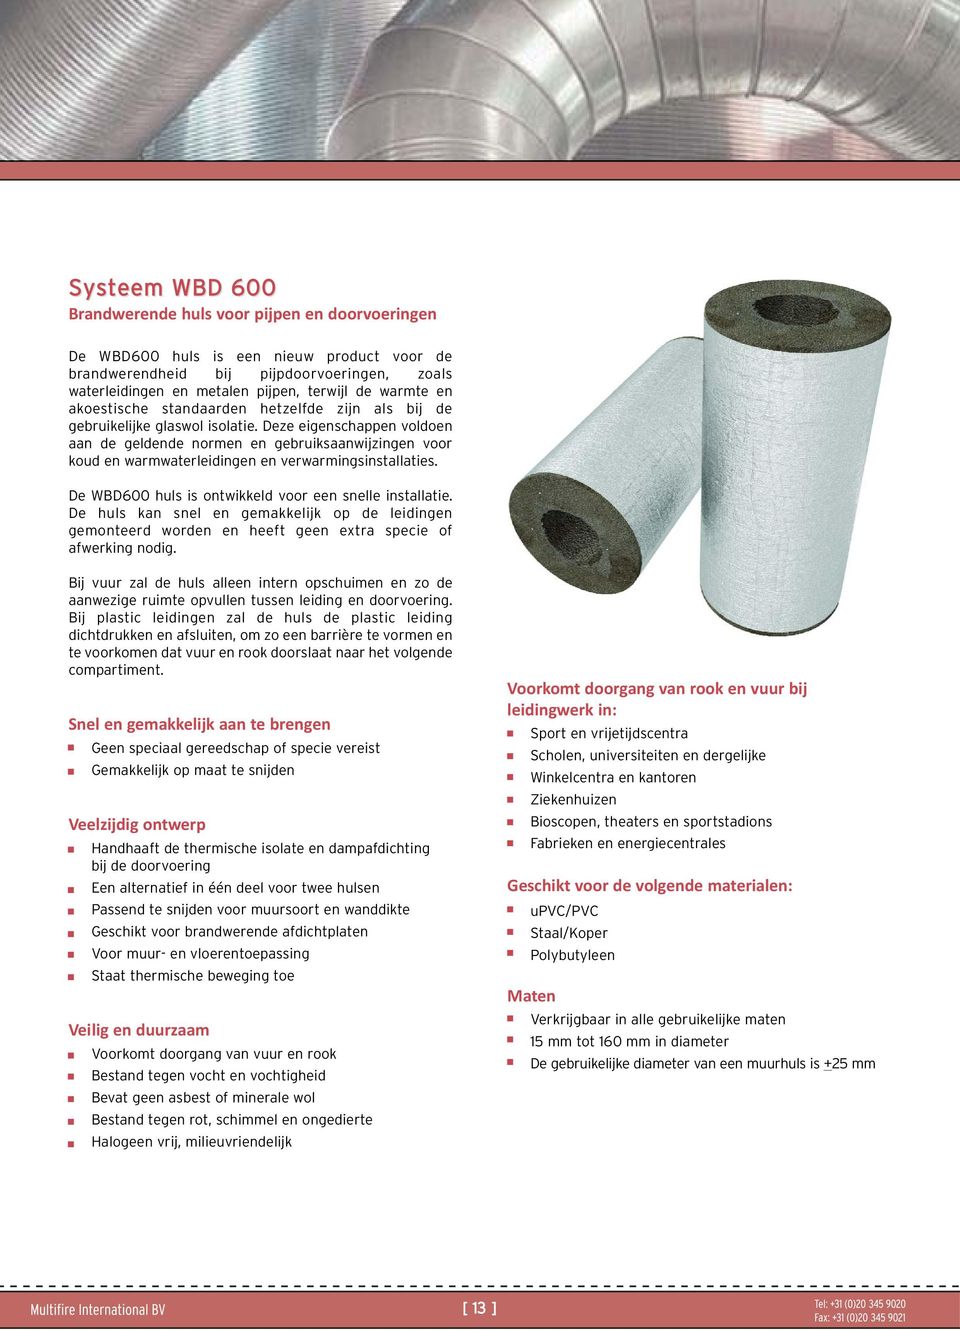 Deze eigenschappen voldoen aan de geldende normen en gebruiksaanwijzingen voor koud en warmwaterleidingen en verwarmingsinstallaties. De WBD600 huls is ontwikkeld voor een snelle installatie.